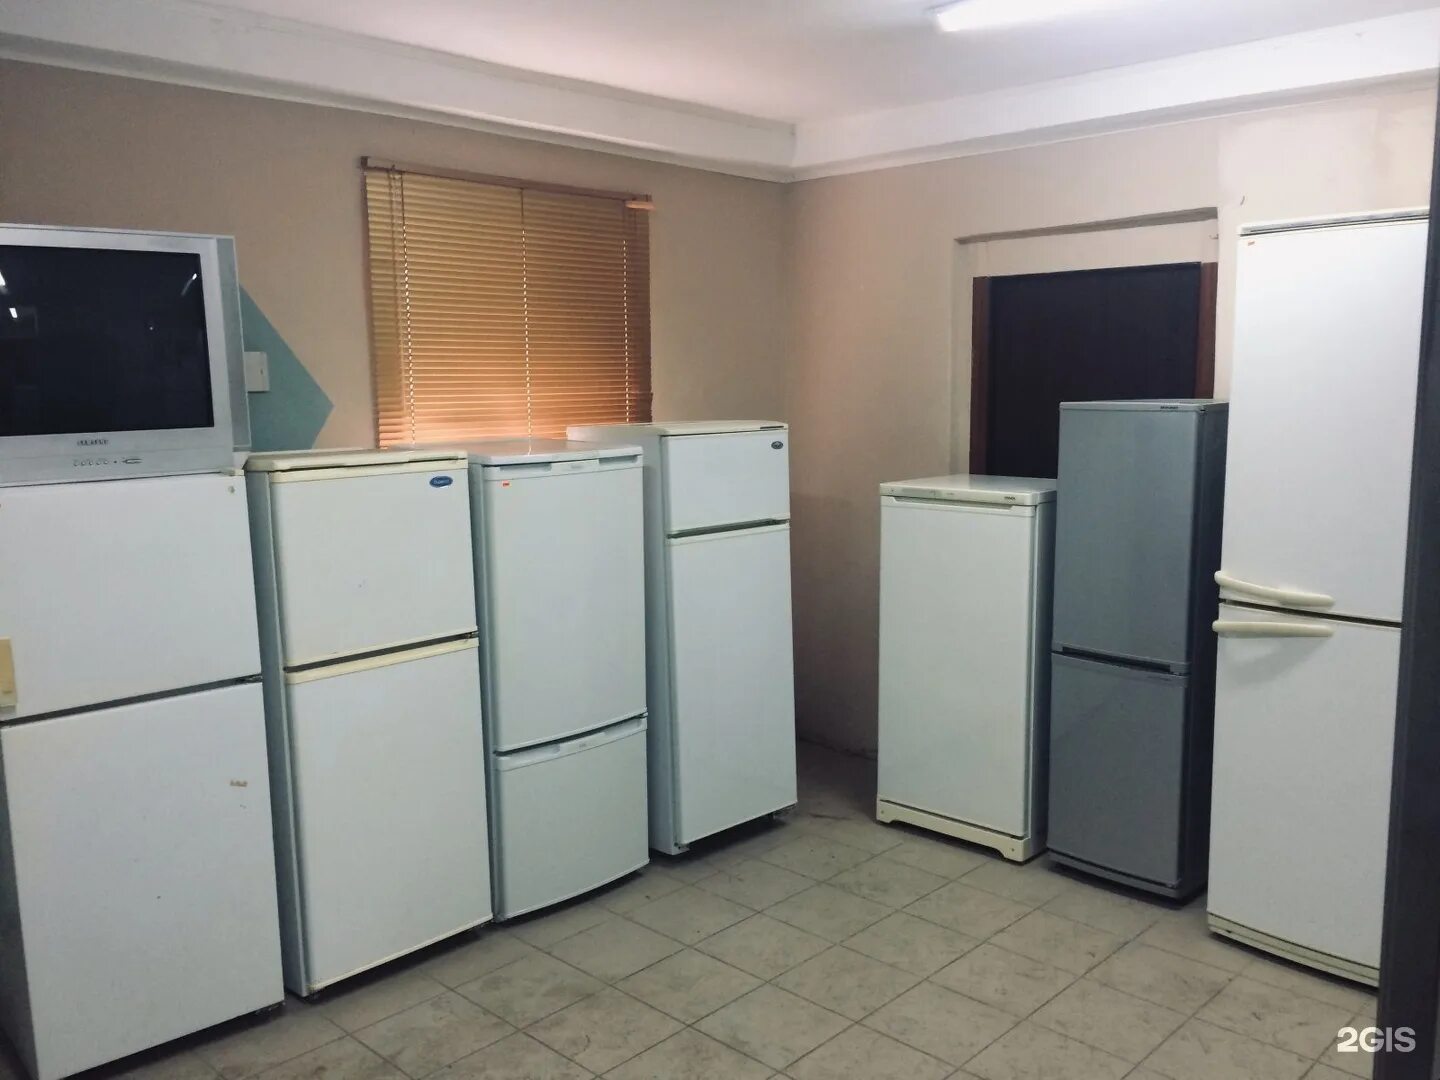 Холодильник б/у. Много холодильников б/у. Холодильник в Алматы. Купить холодильник бу на Отрадном. Холодильники б у новосибирск